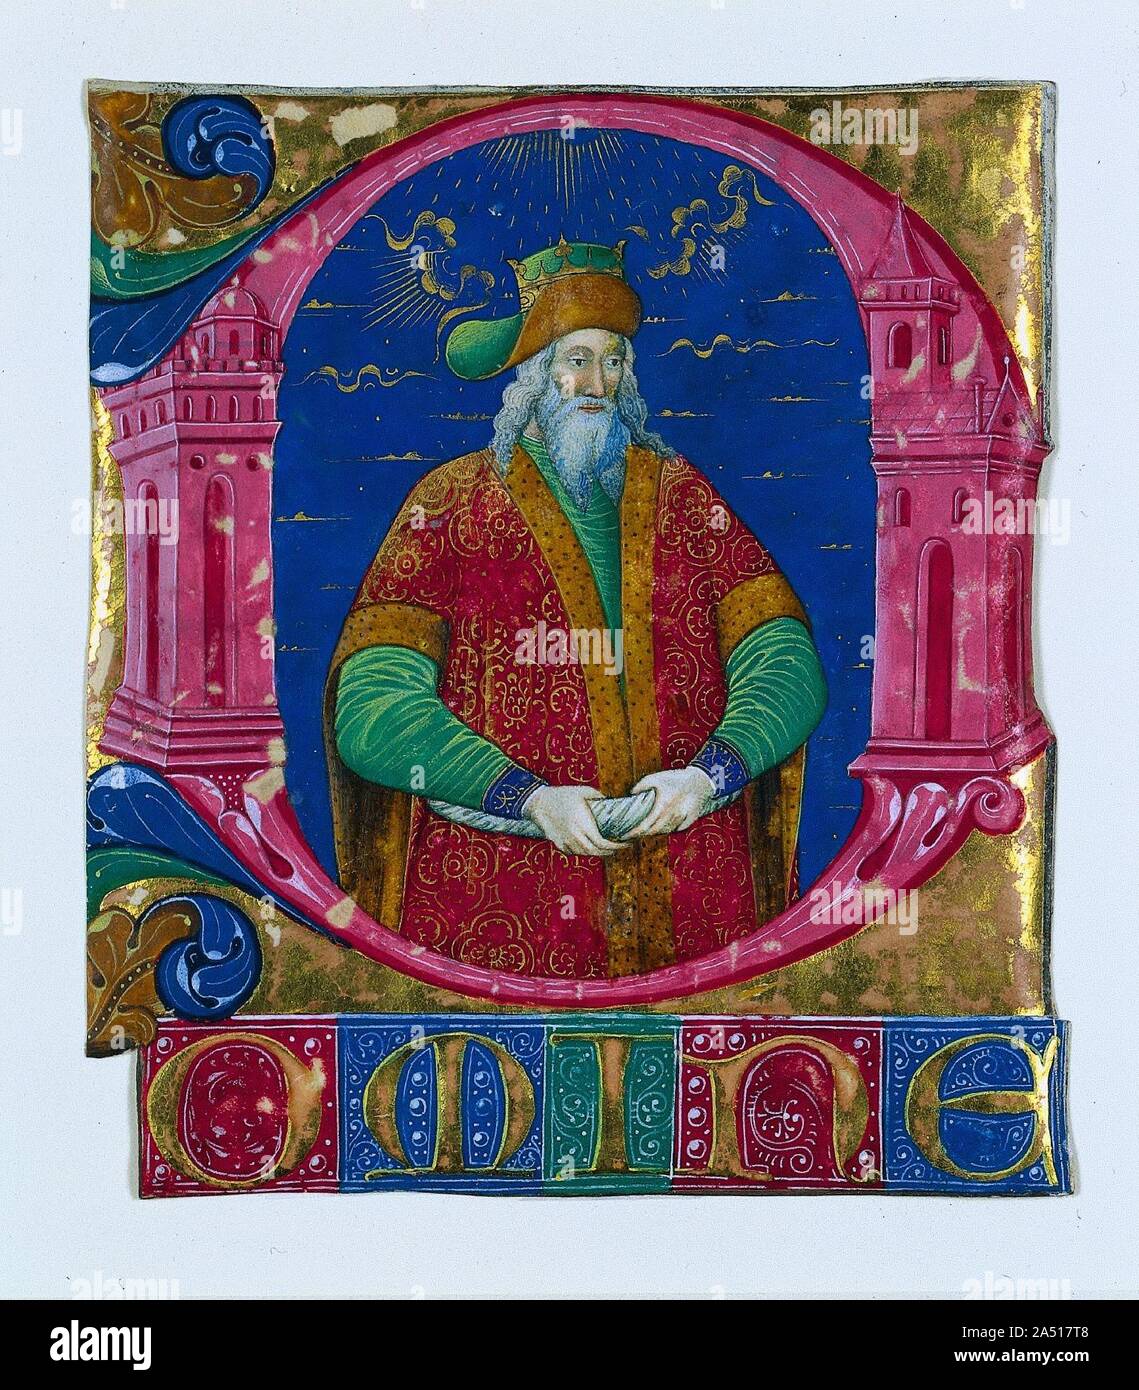 Omine inicial[D] de un libro coral: El rey Salomón, c. 1470-1480. La  primera D toma la forma del templo de Jerusalén, construido por el rey  Salomón, quien ocupa el espacio interior del